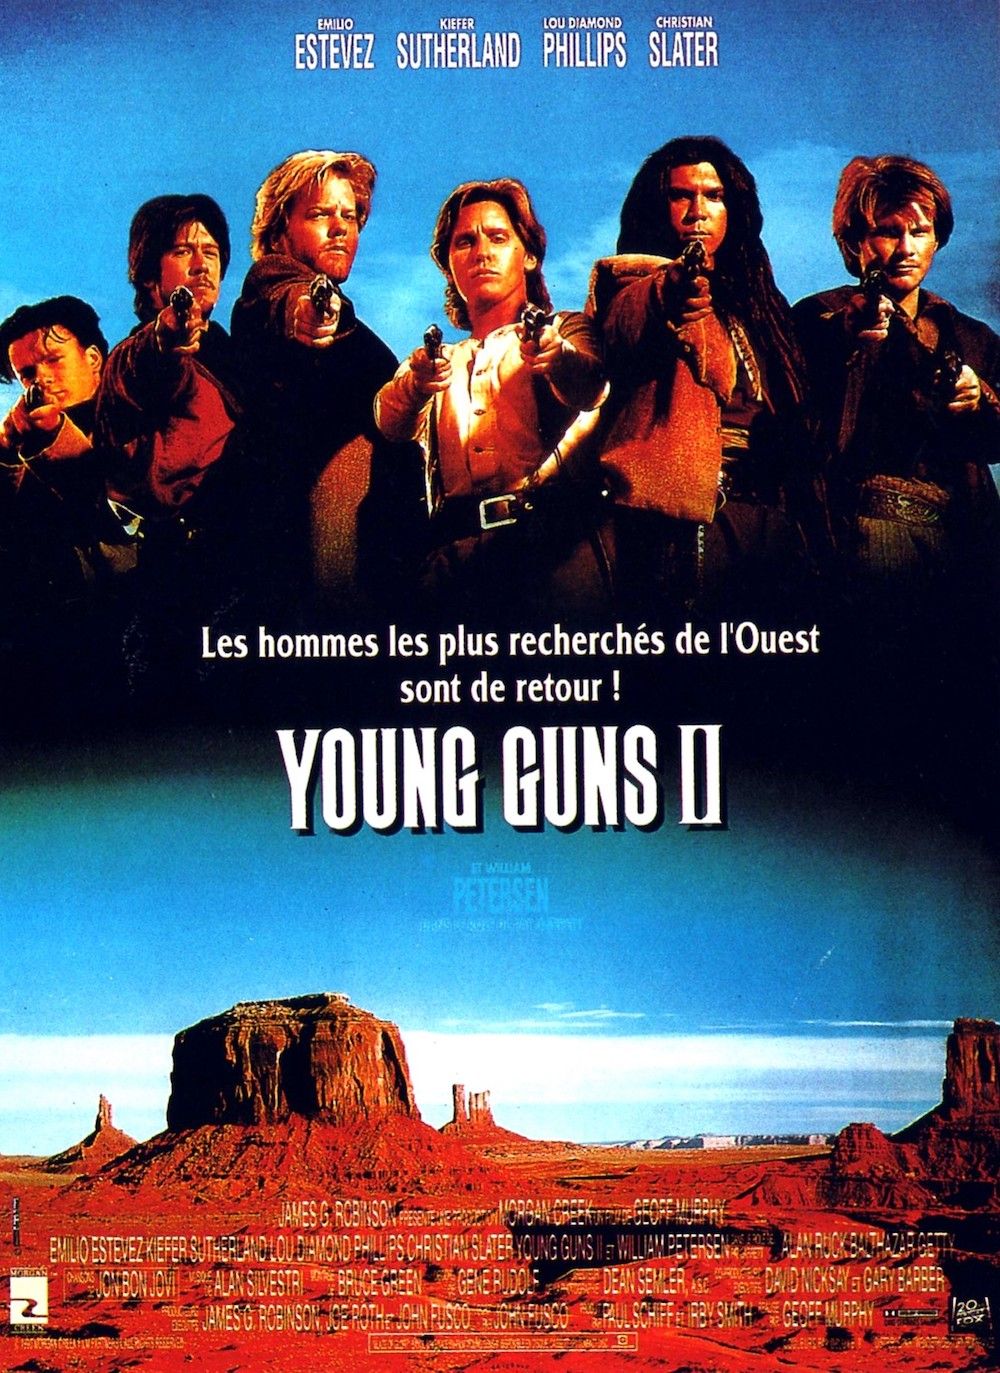 1990 Young Guns II